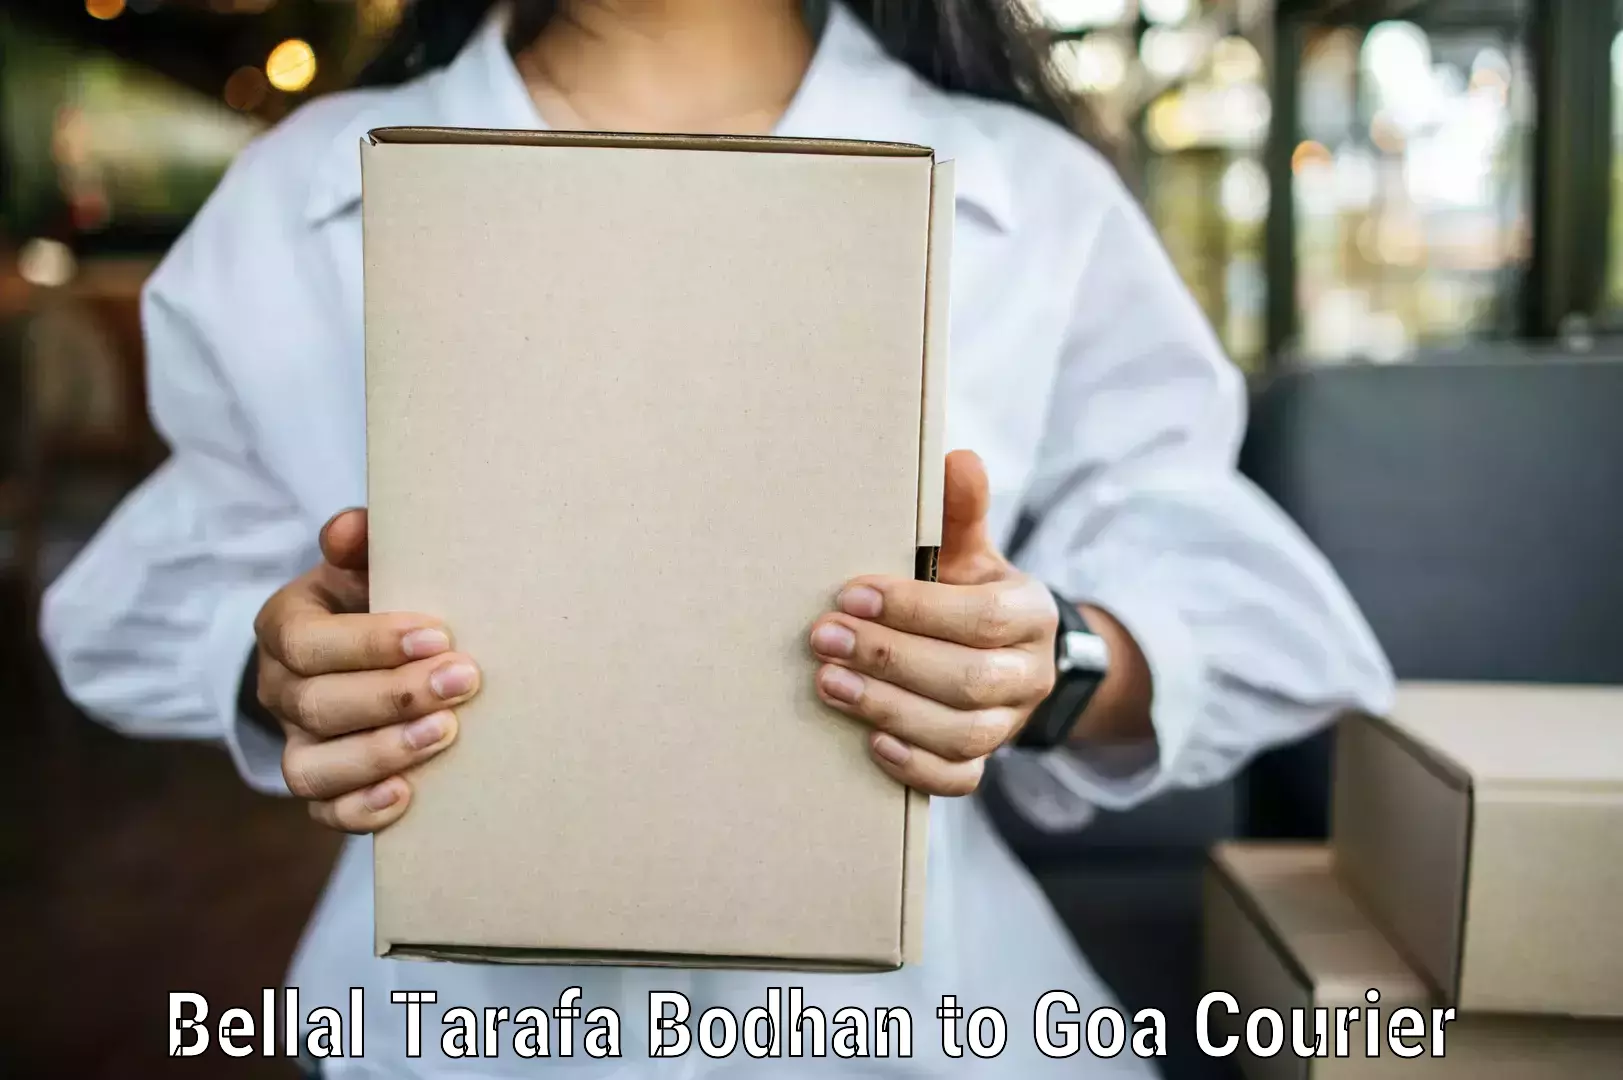 Global parcel delivery Bellal Tarafa Bodhan to Goa